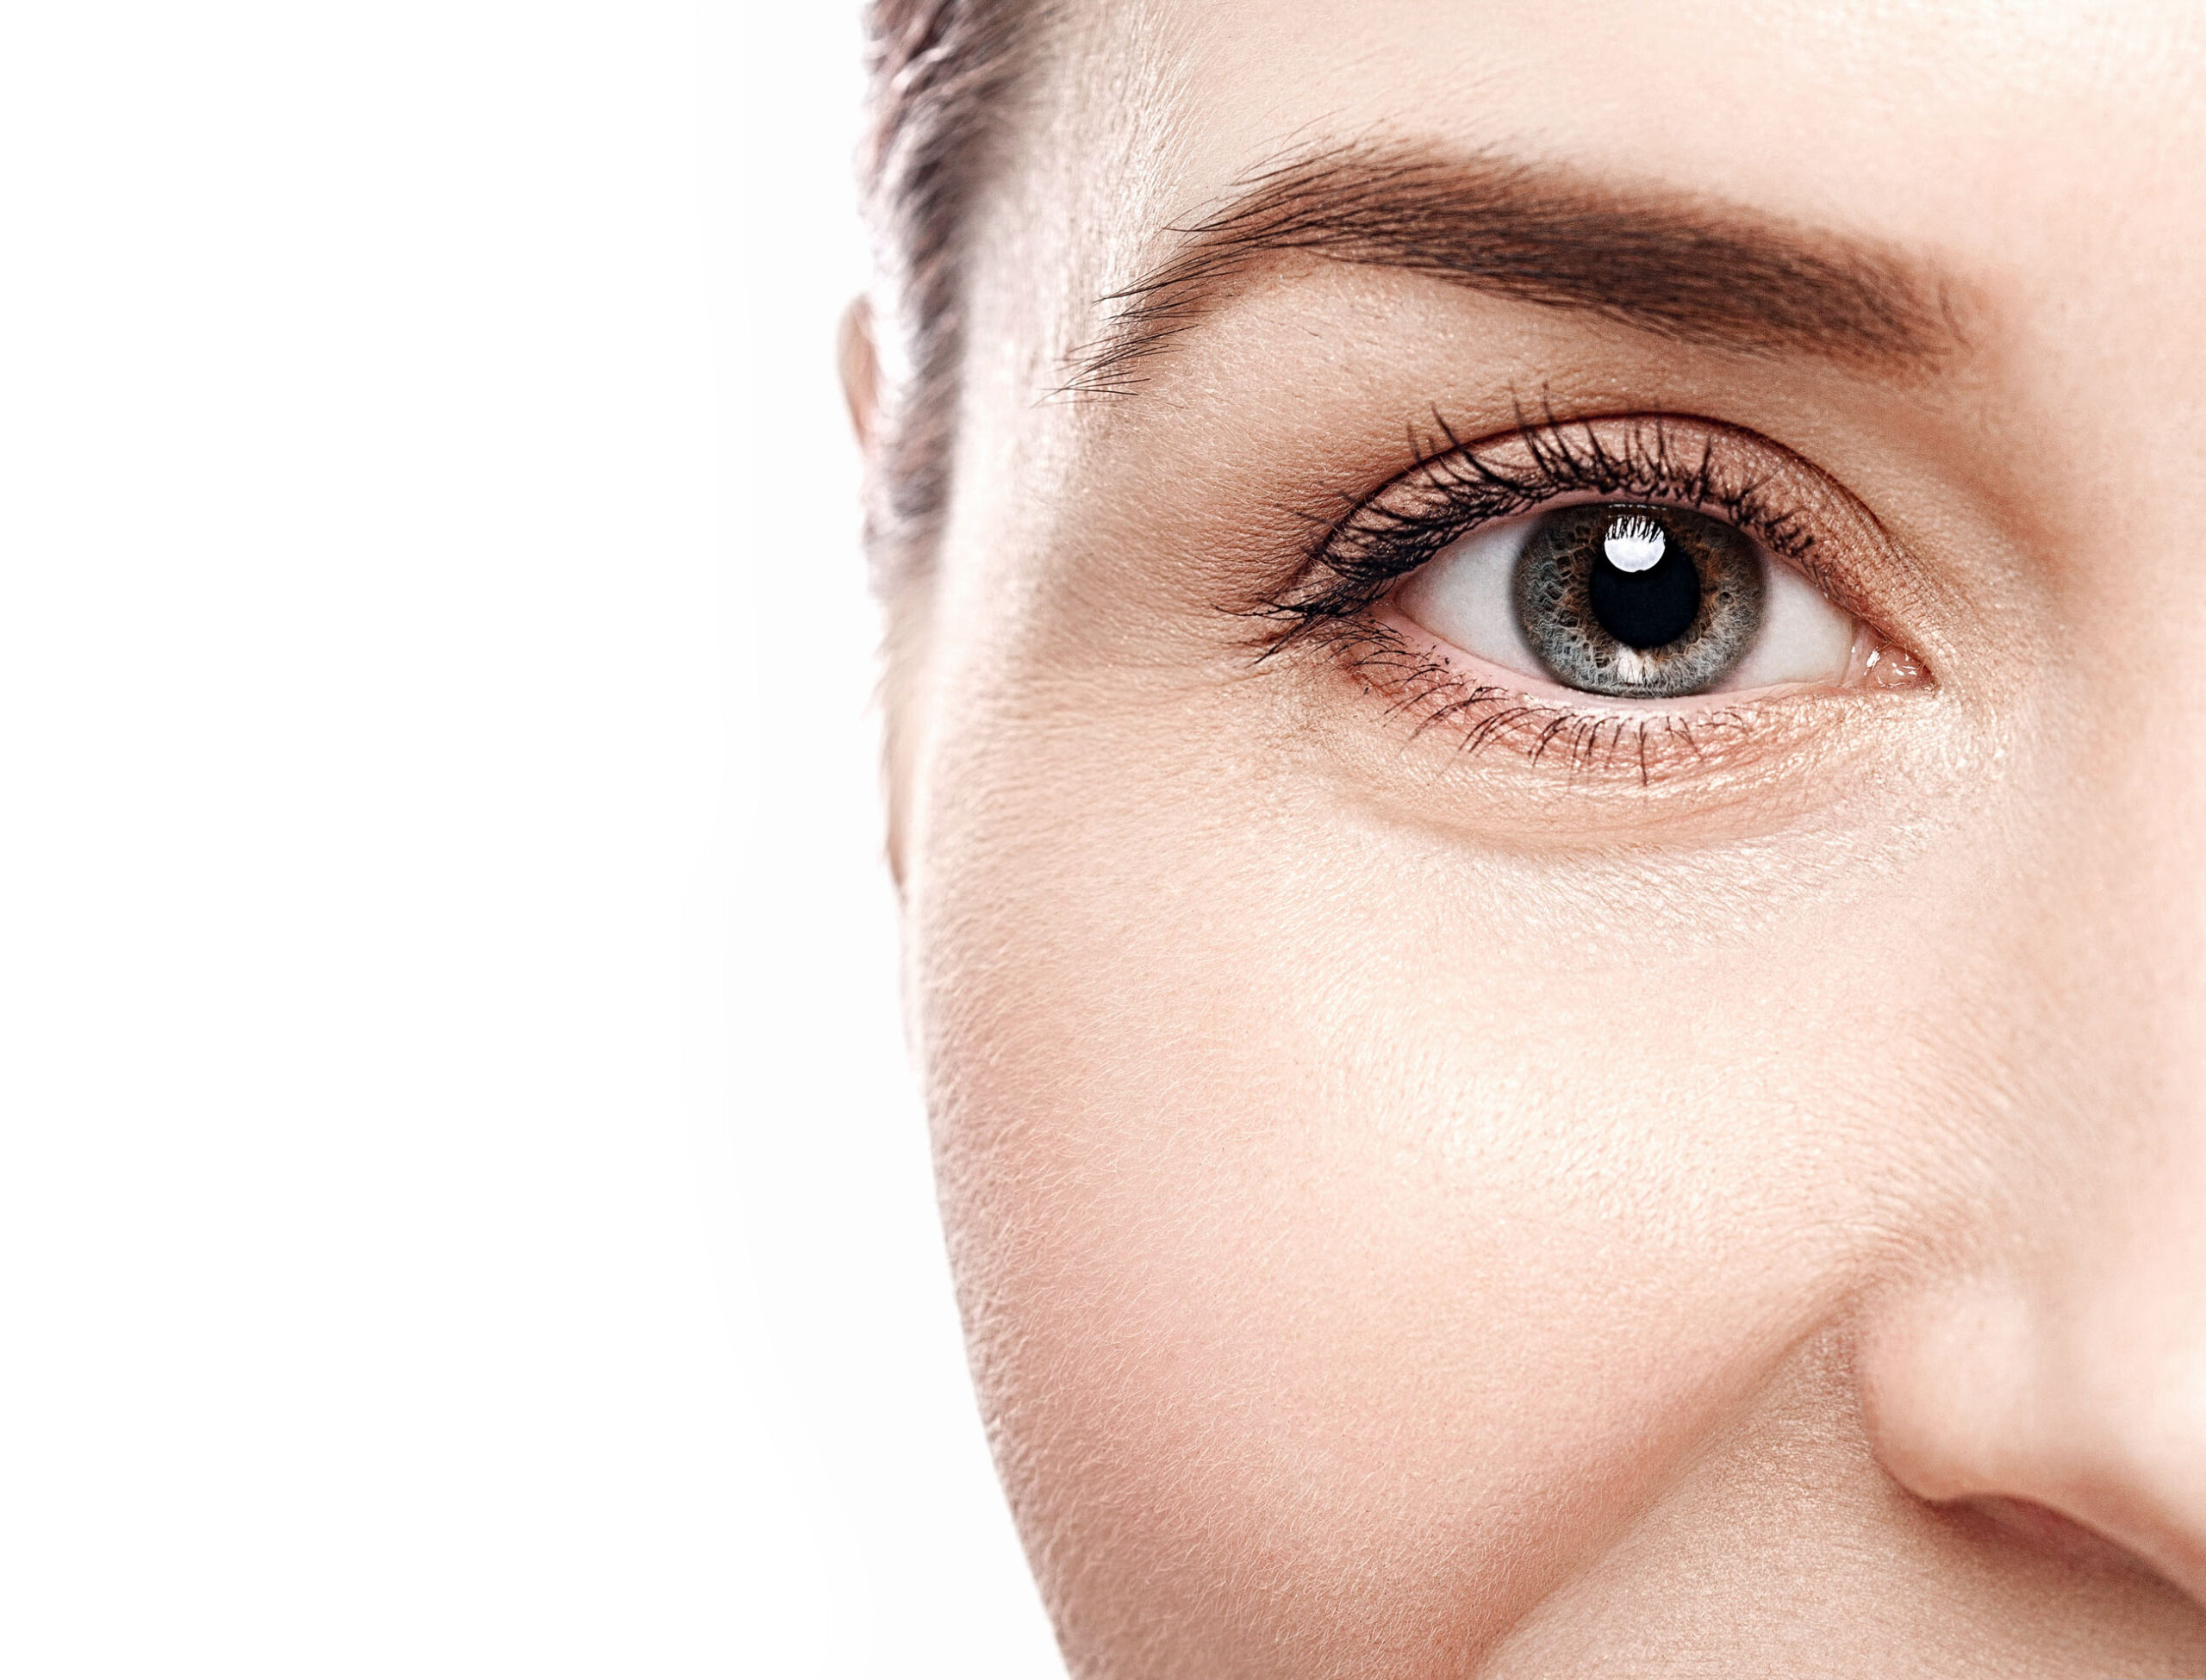 Quais são os benefícios das lentes de contato descartáveis 1 Day?